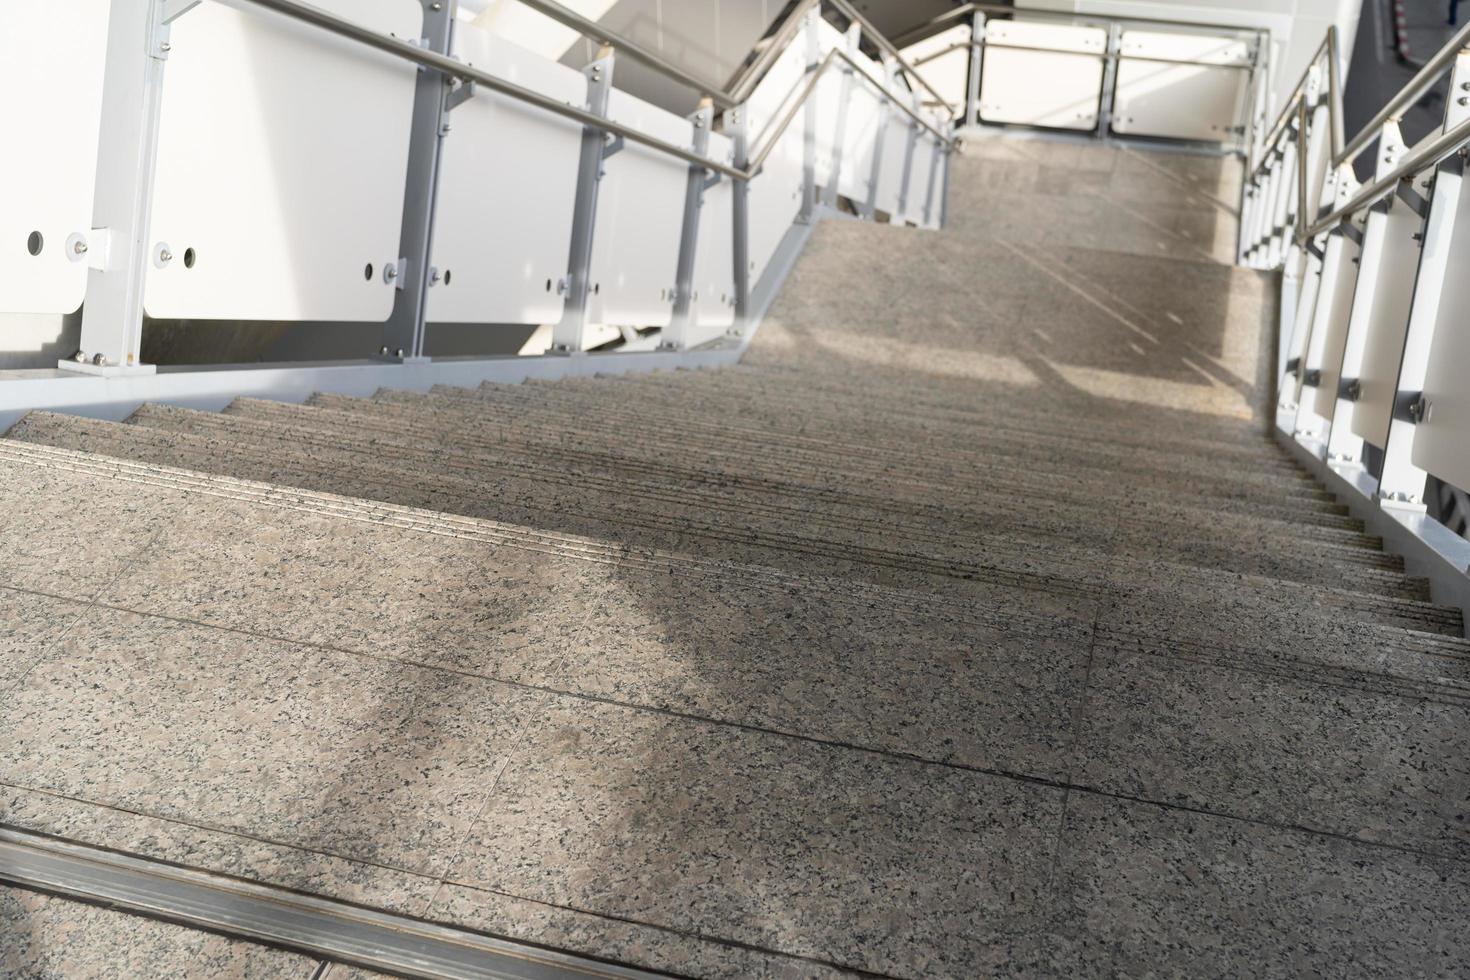 escalera pública en la estación o centro comercial para salida, entrada. escalera dentro del metro subterráneo con pasamanos de acero limpio. una escalera vacía en una estación de metro foto